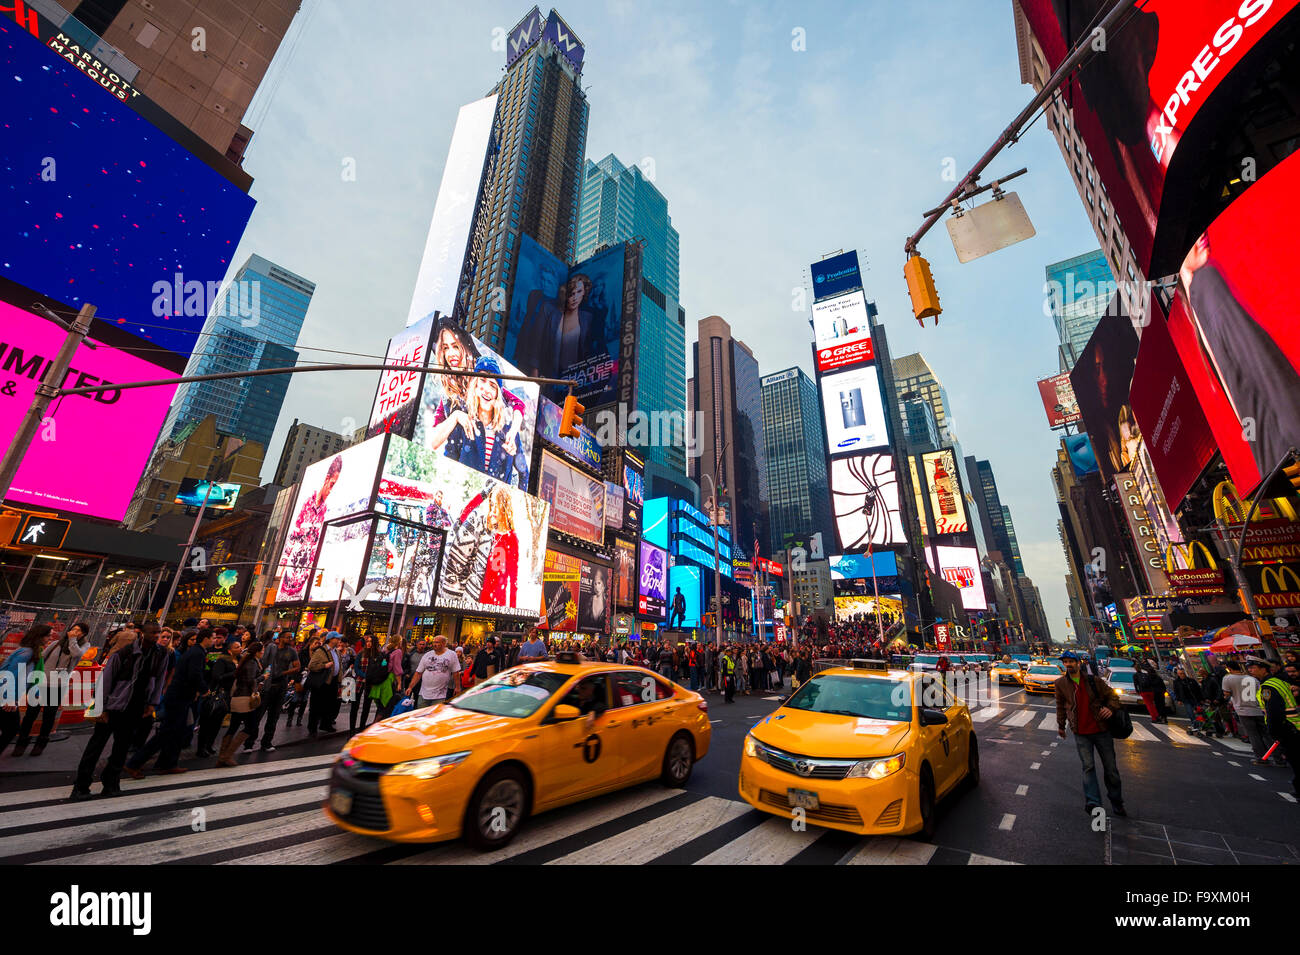 La VILLE DE NEW YORK, USA - Le 13 décembre 2015 : la signalisation lumineuse clignote pendant les vacances foule à Times Square avant le jour de l'An Banque D'Images